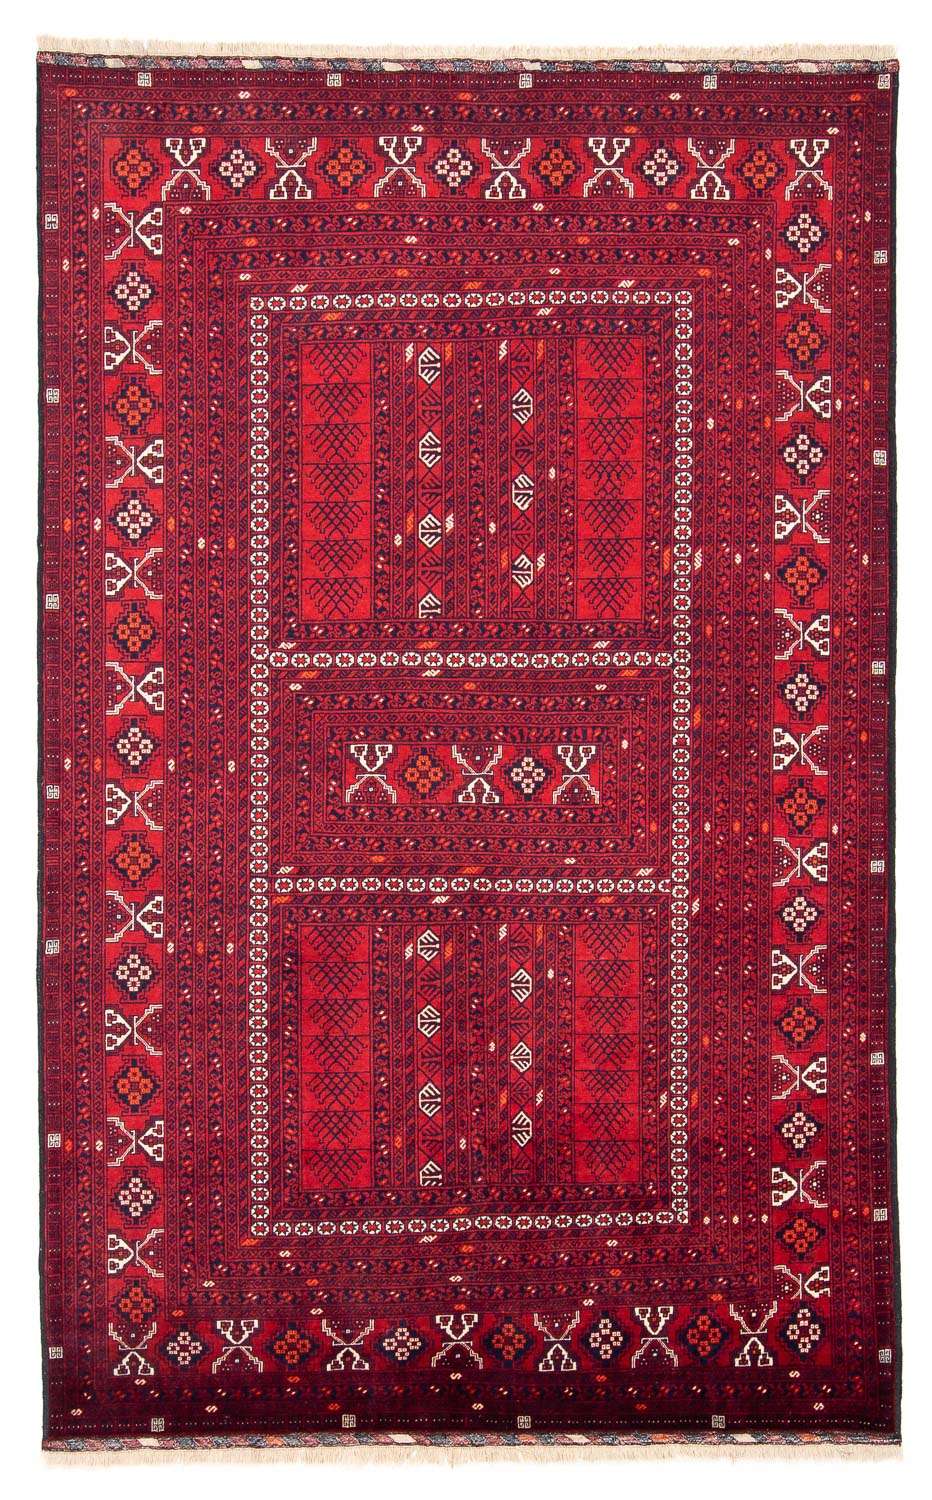 Tapis Turkaman - 245 x 158 cm - rouge foncé